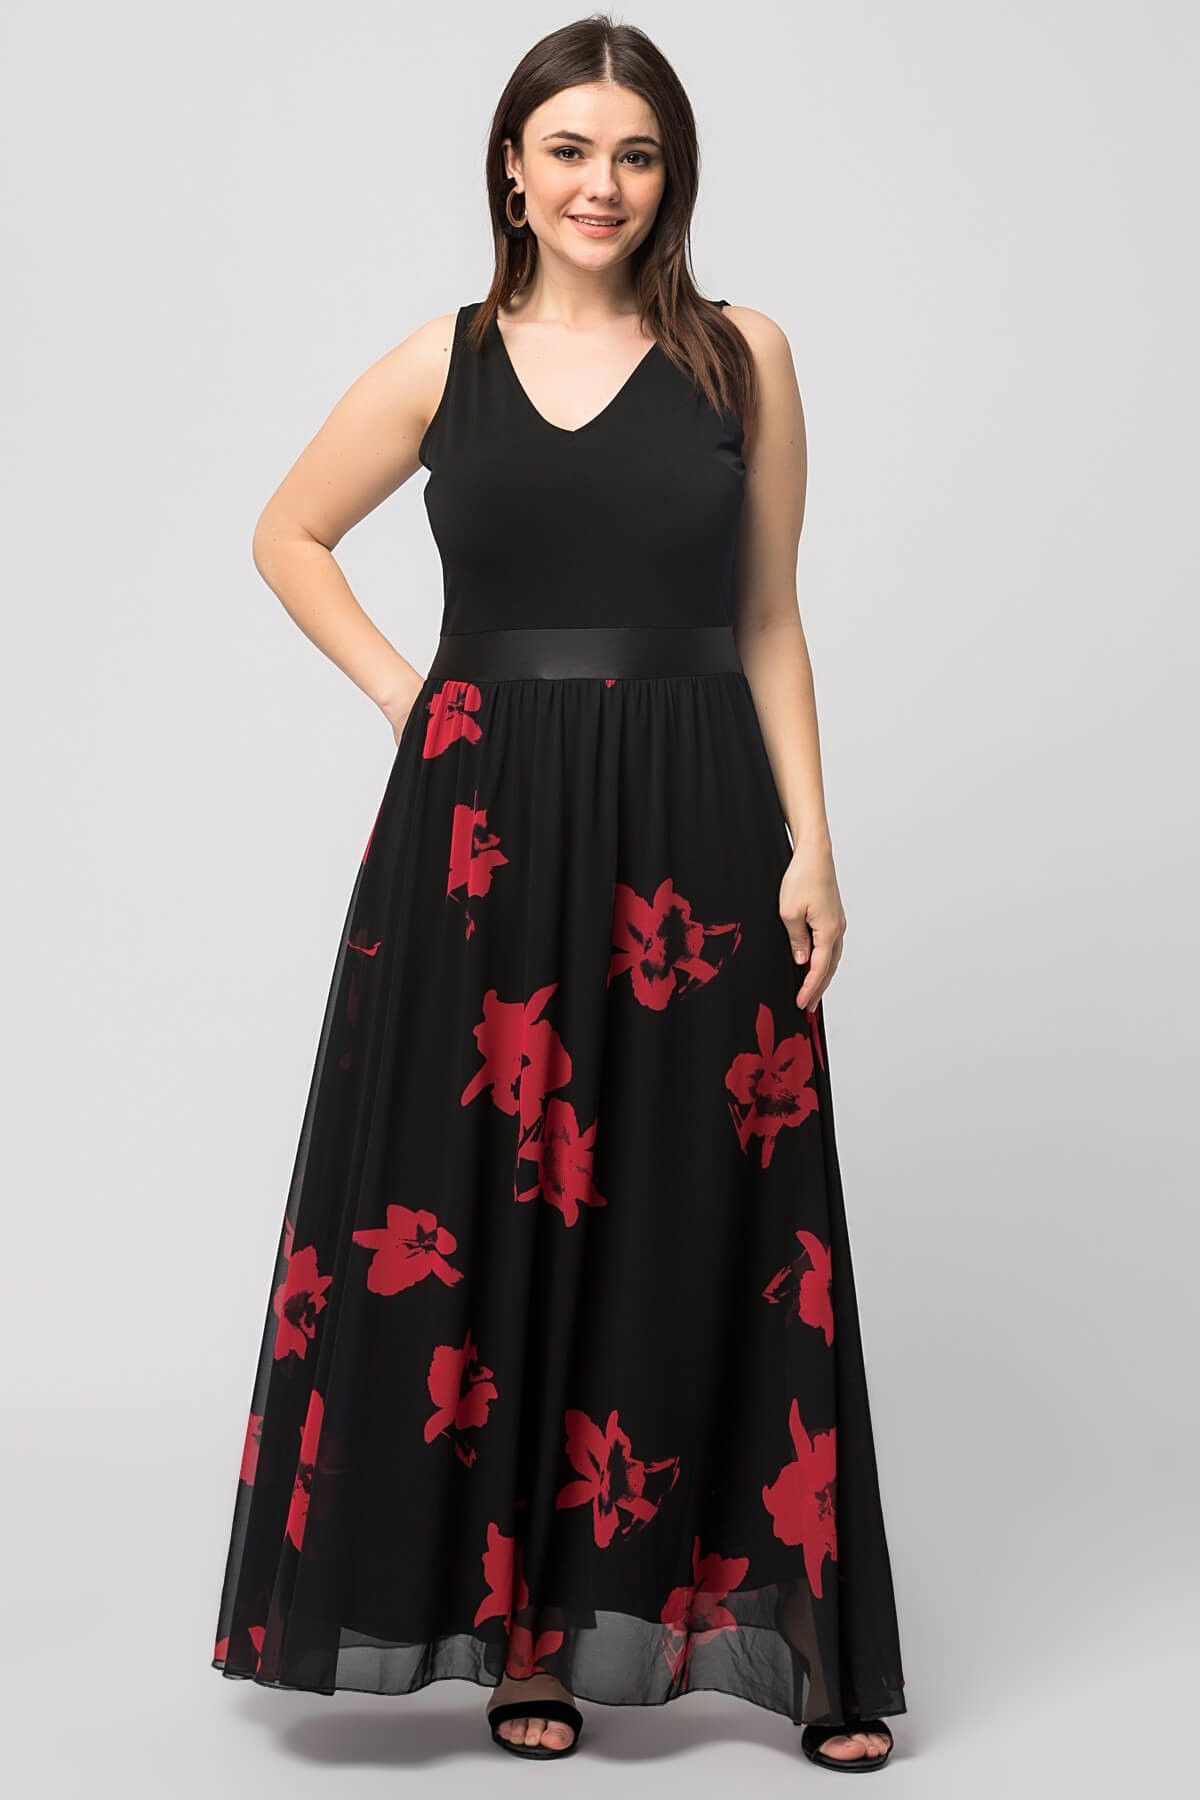 Şans Kadın Siyah Çiçek Desenli Elbise 65N6856